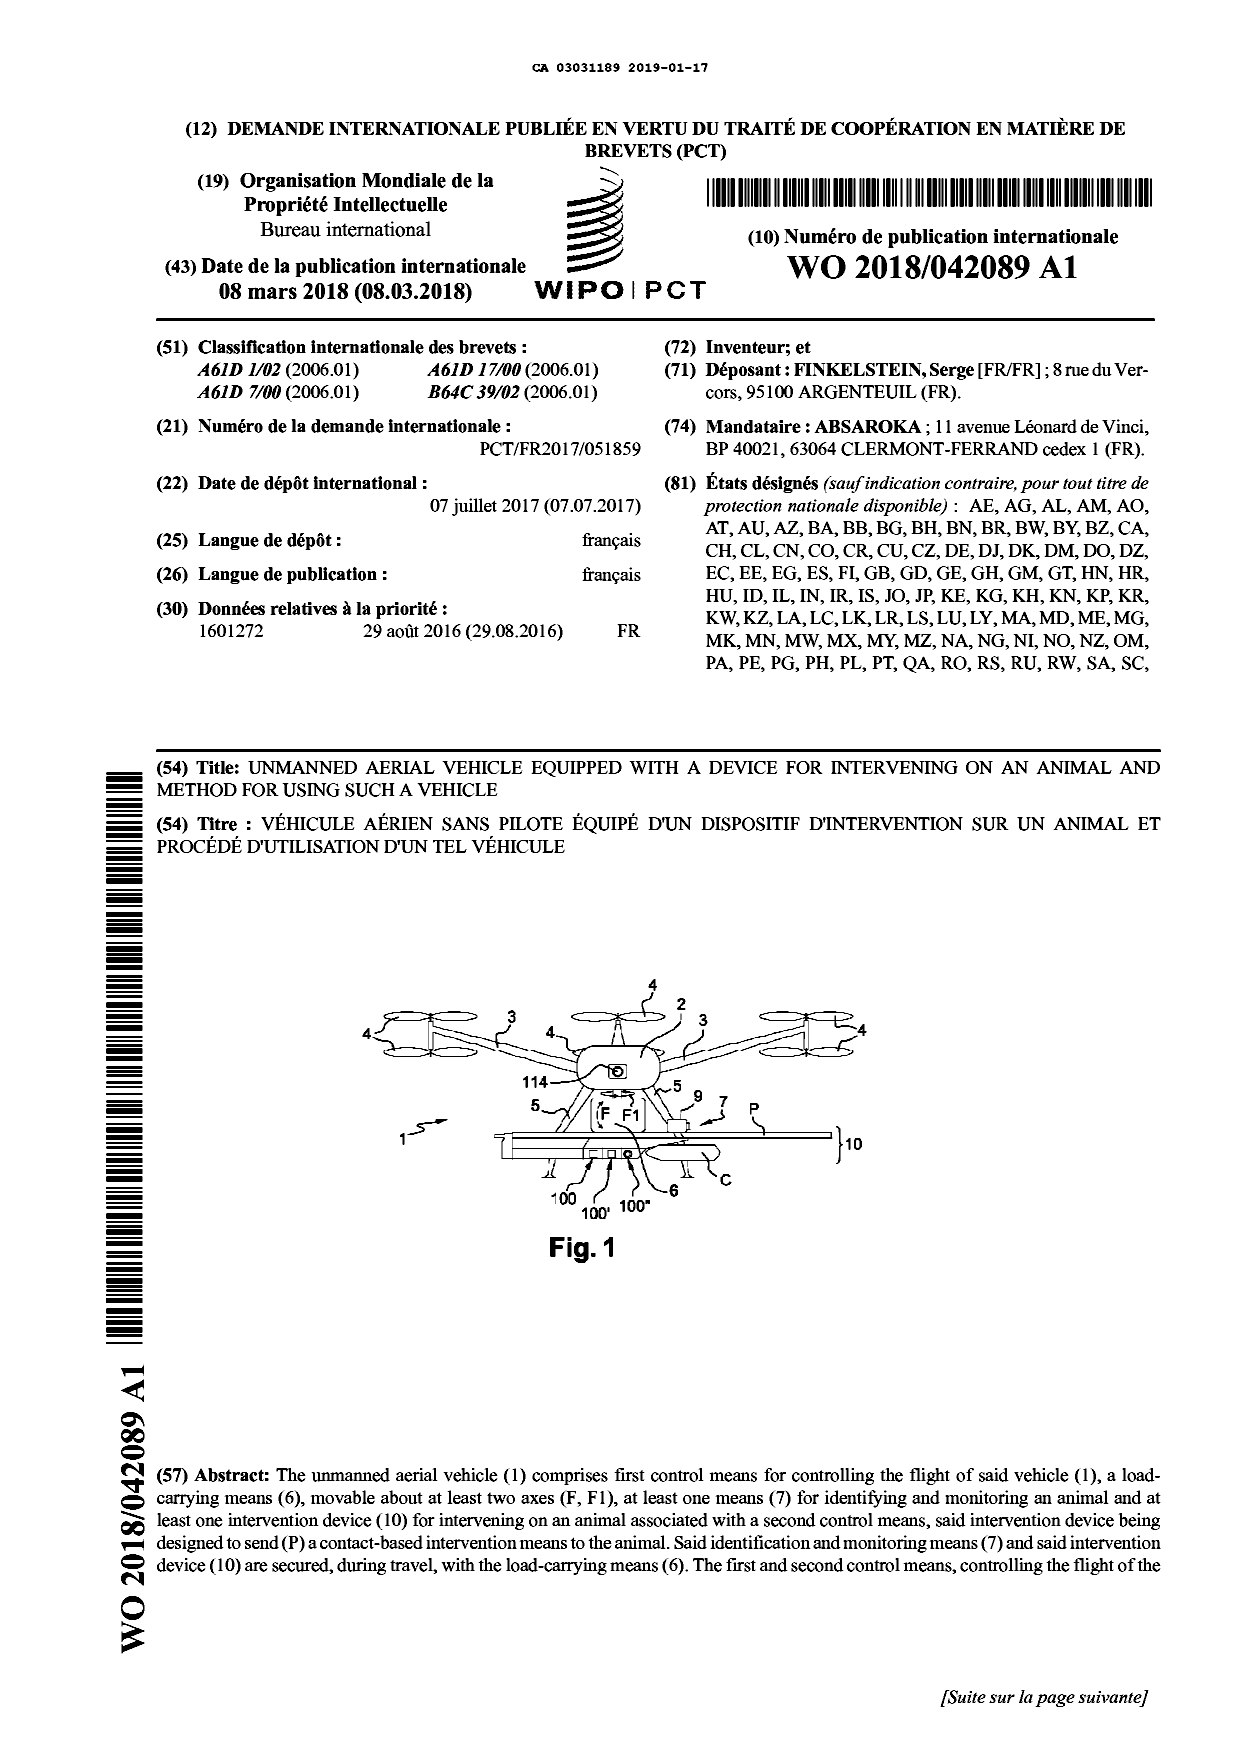 Document de brevet canadien 3031189. Abrégé 20190117. Image 1 de 2